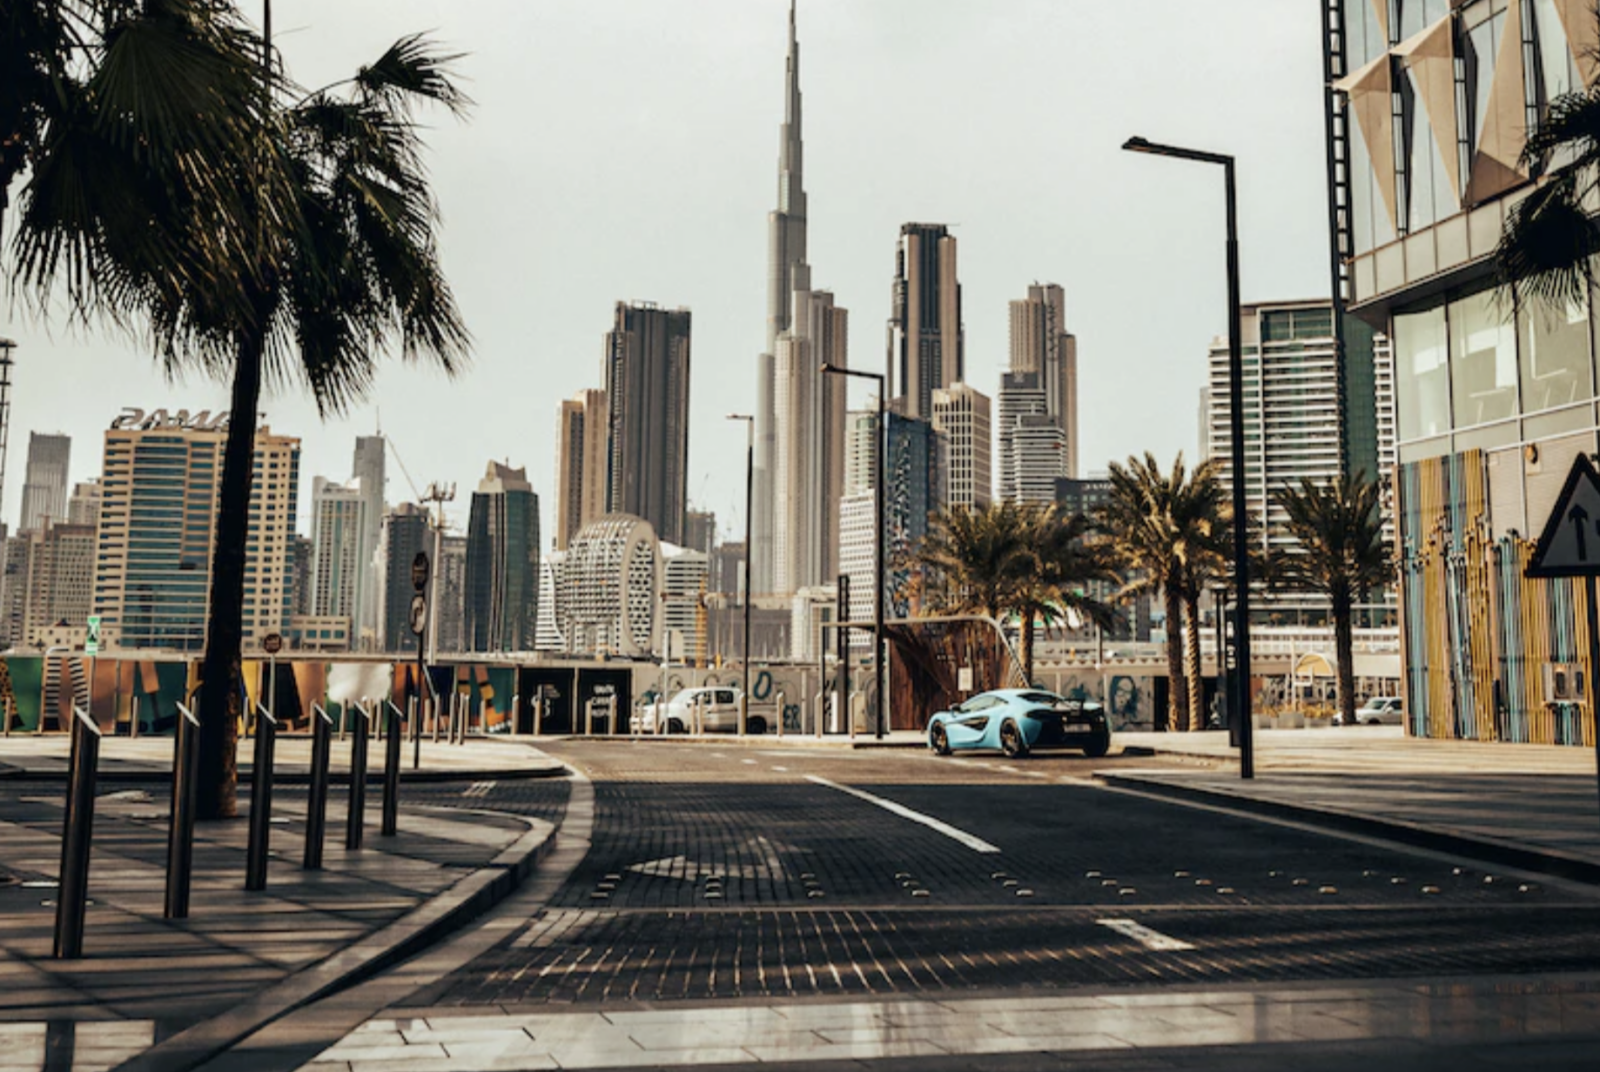 The skyline in Dubai